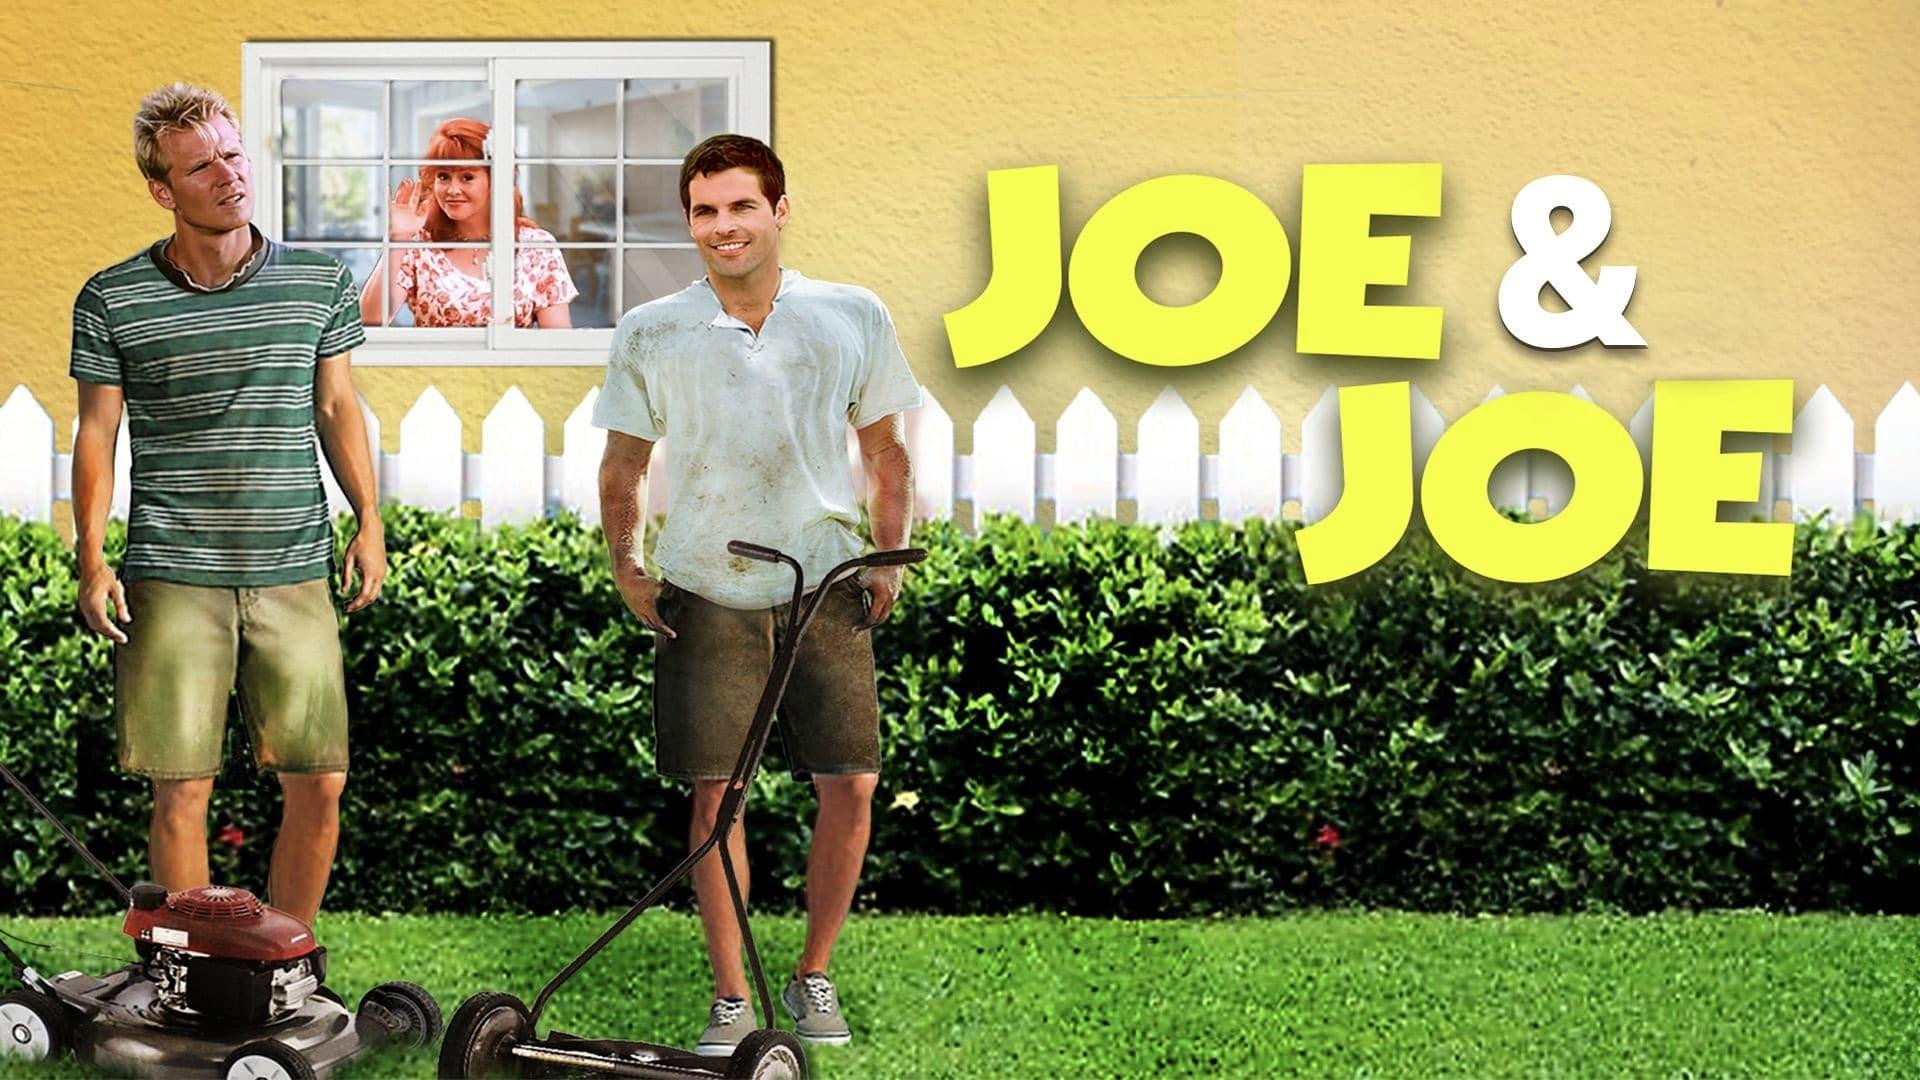 Joe & Joe backdrop